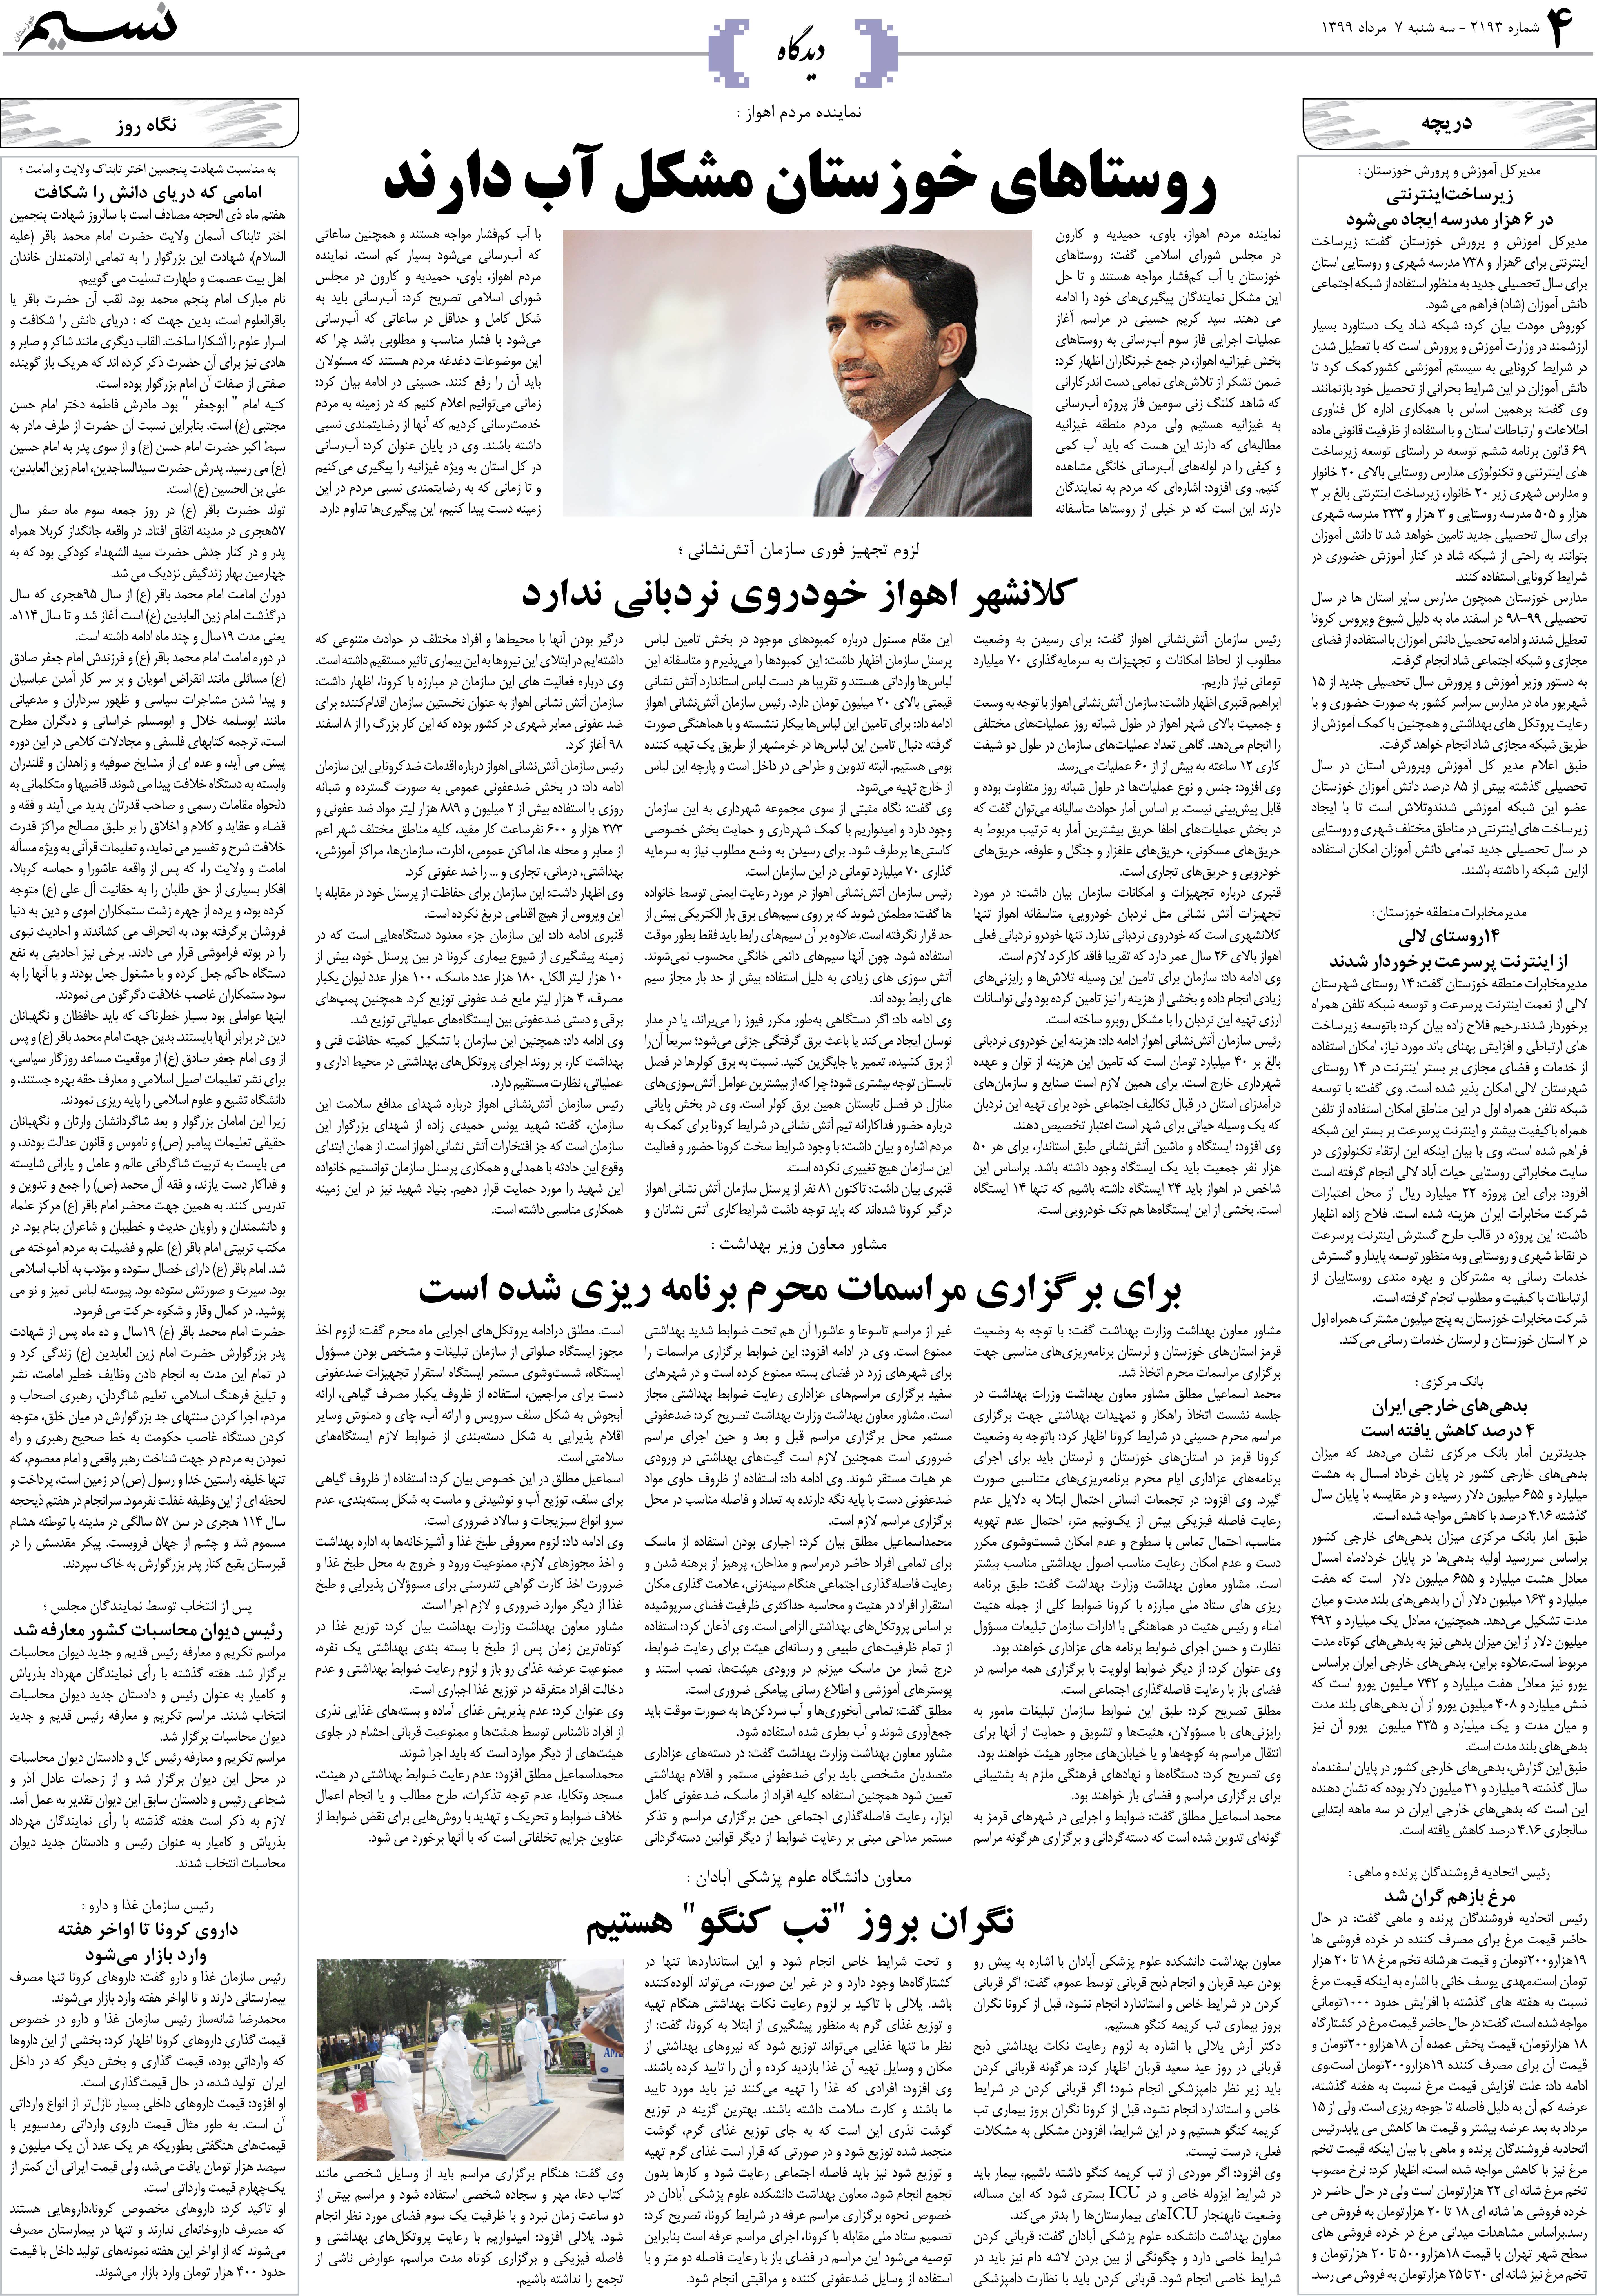 صفحه دیدگاه روزنامه نسیم شماره 2193